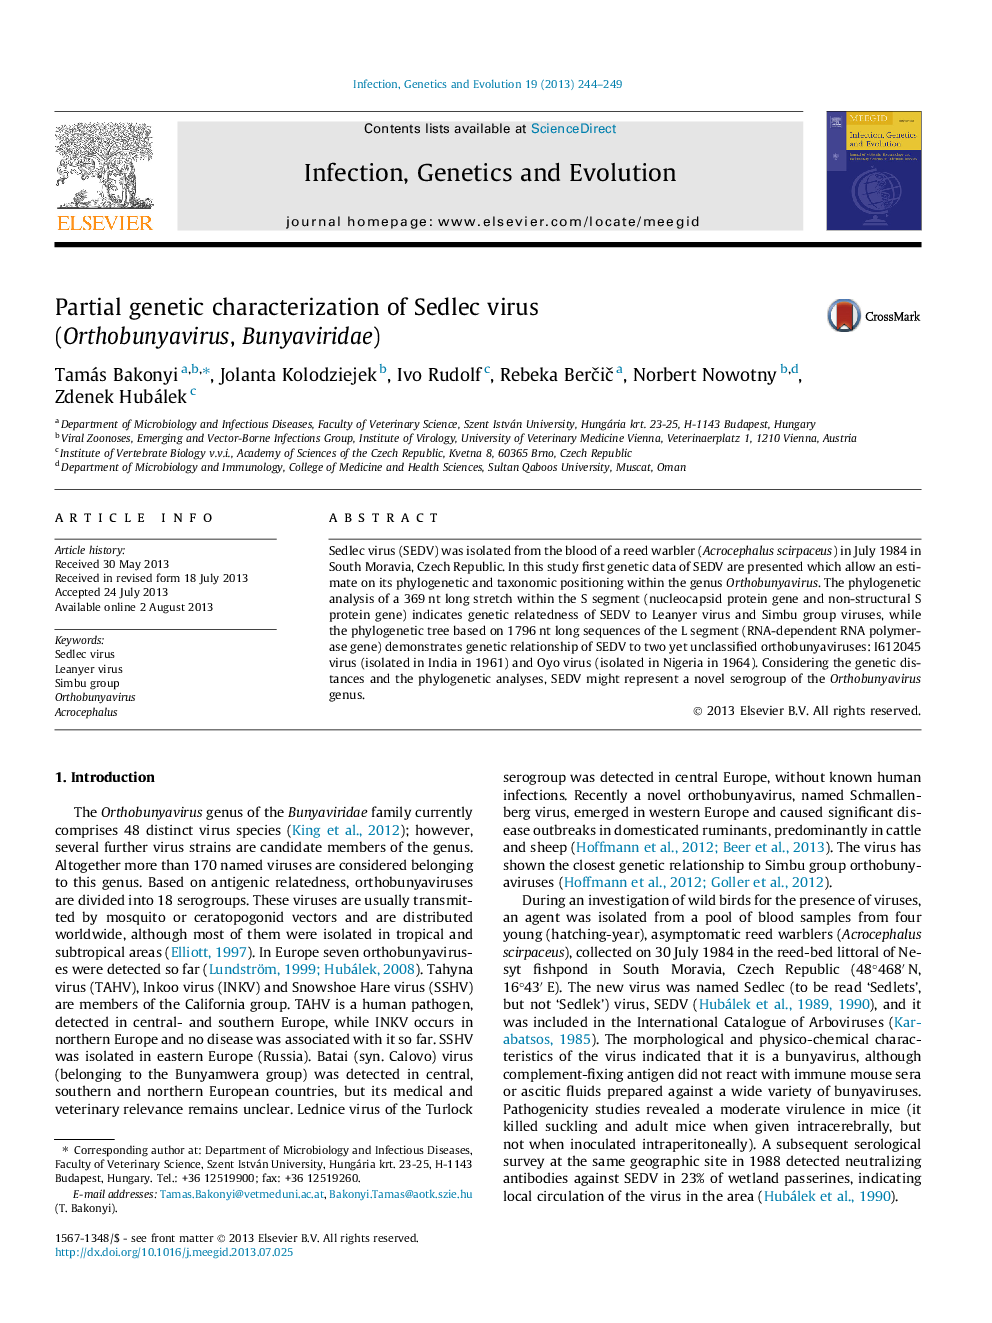 Partial genetic characterization of Sedlec virus (Orthobunyavirus, Bunyaviridae)